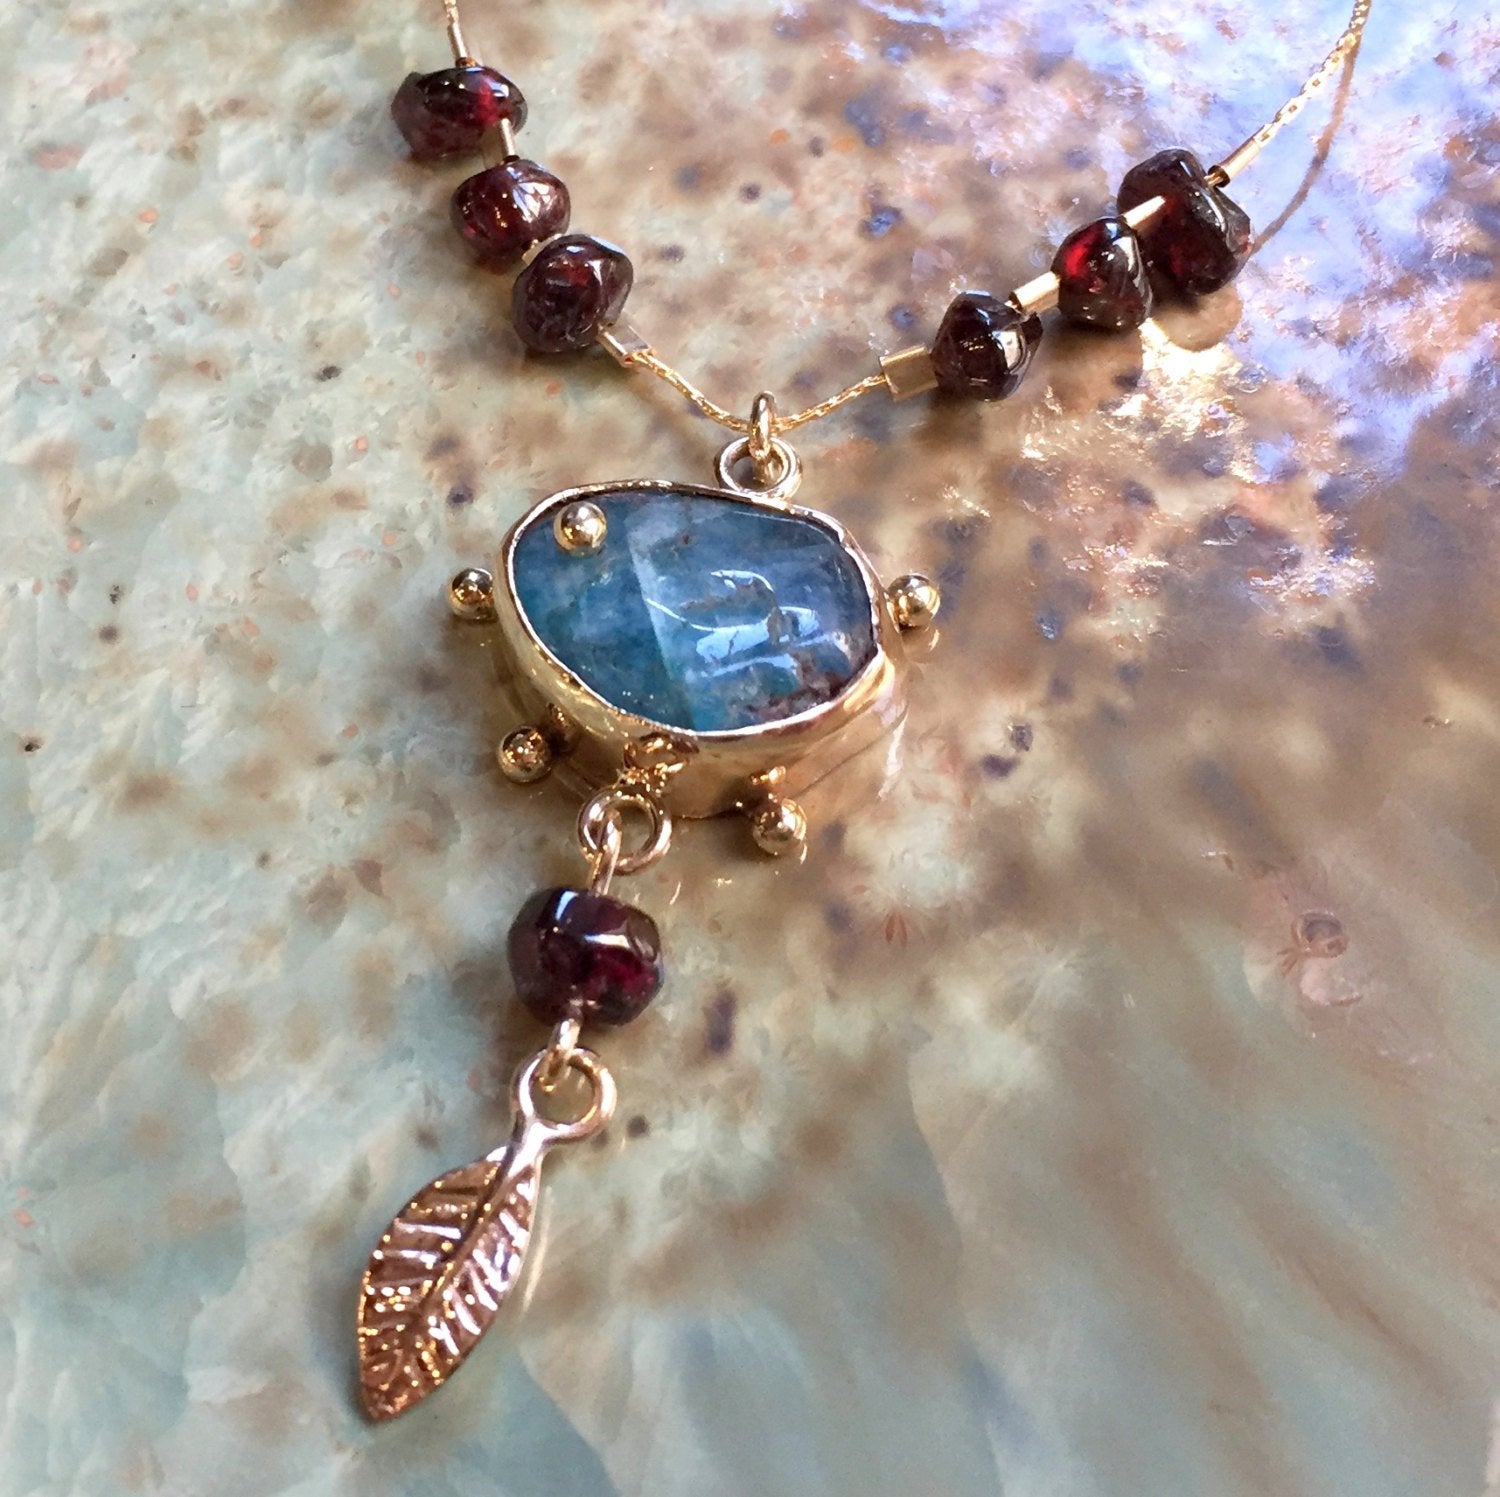 Blue agate garnet stones necklace